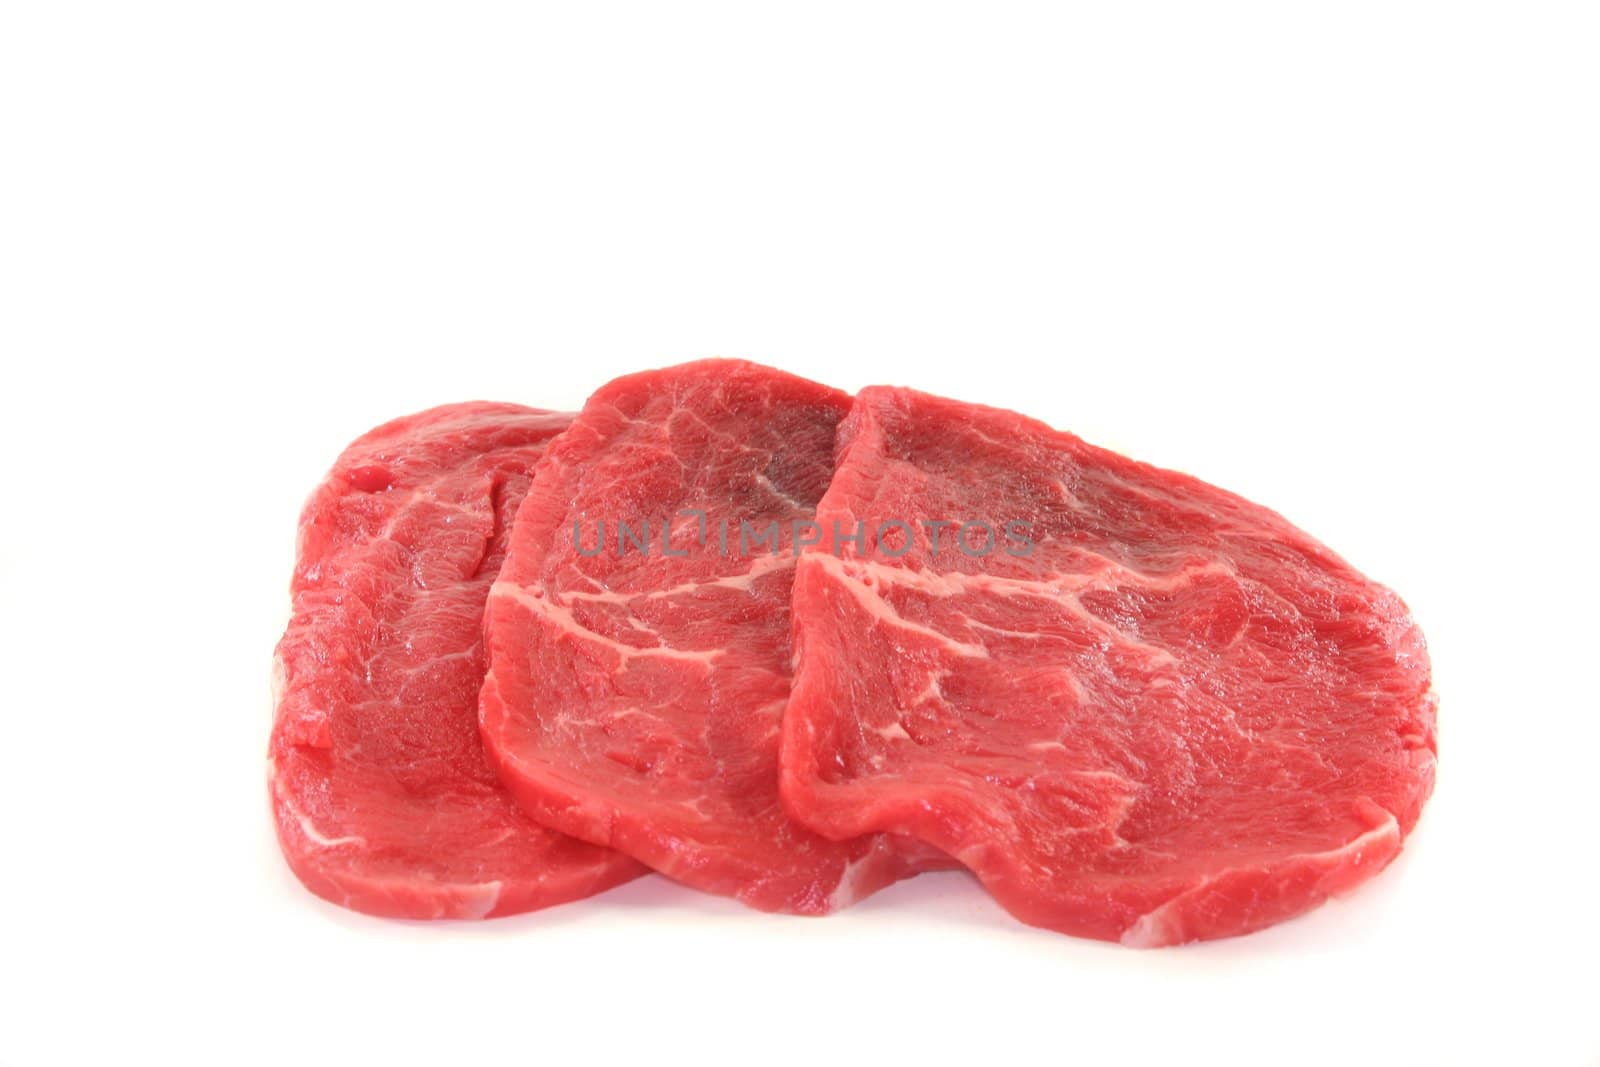 Beef minute steaks by silencefoto